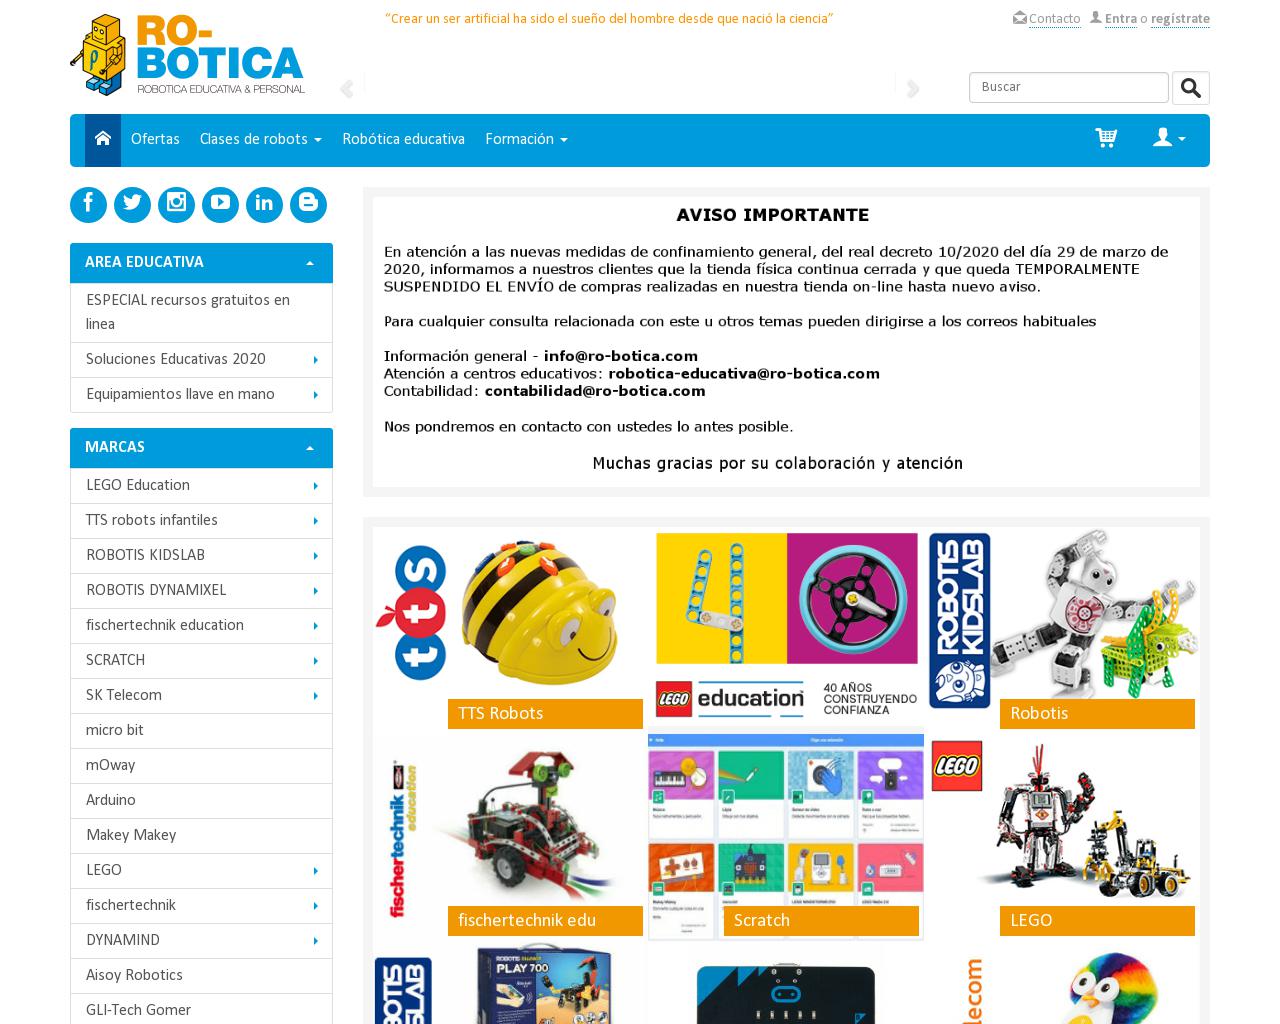 ro-botica.com